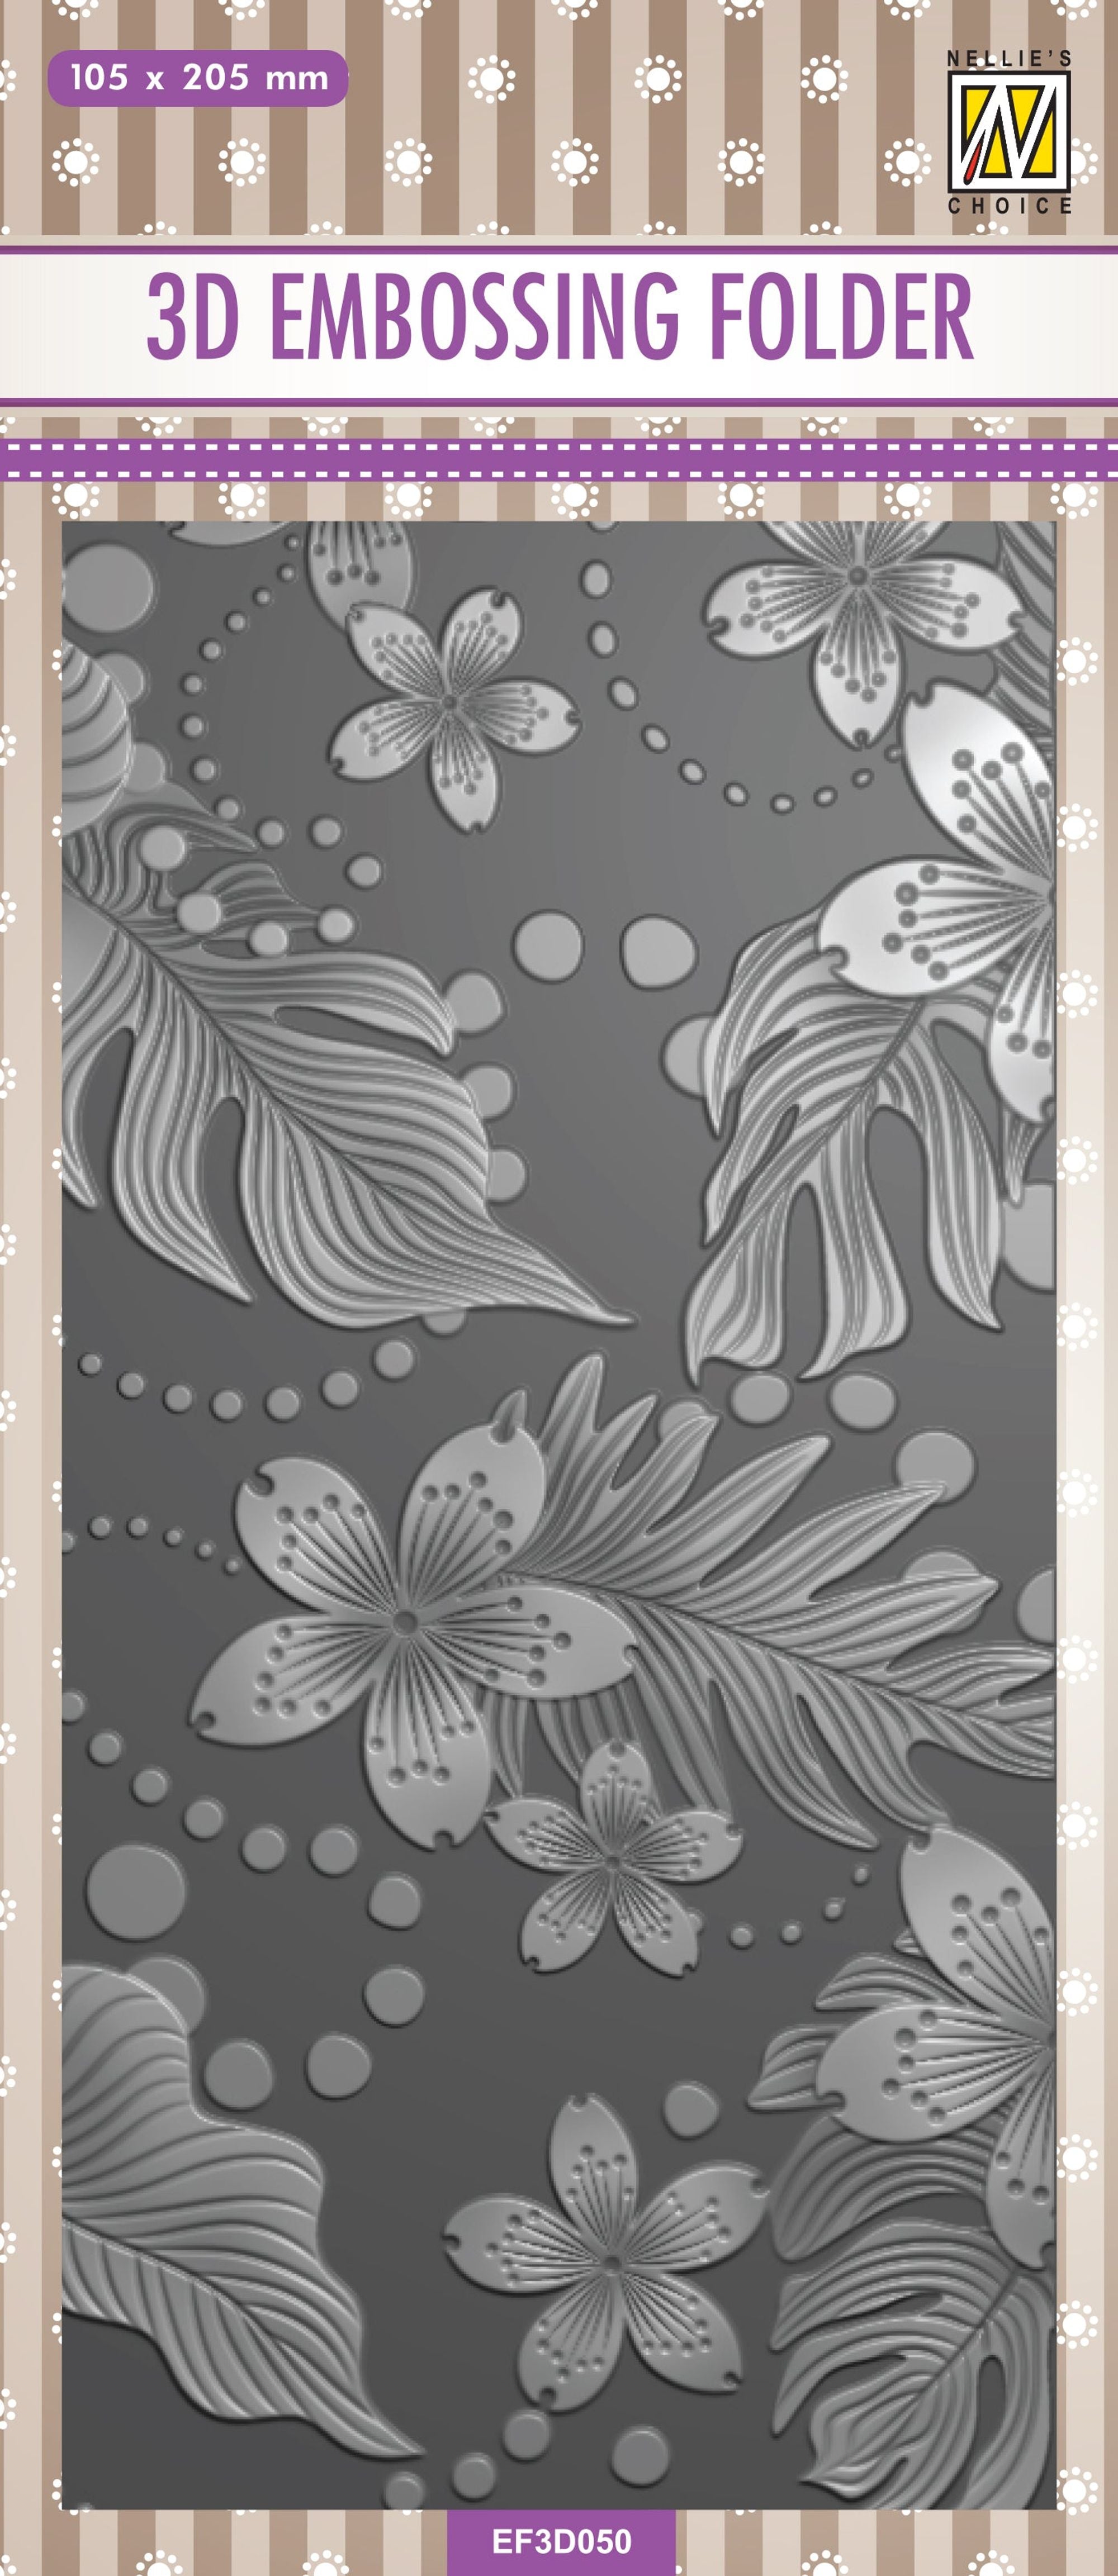 Nellie's Choice 3D Embossing Folder Slimline - Leaves & Flowers